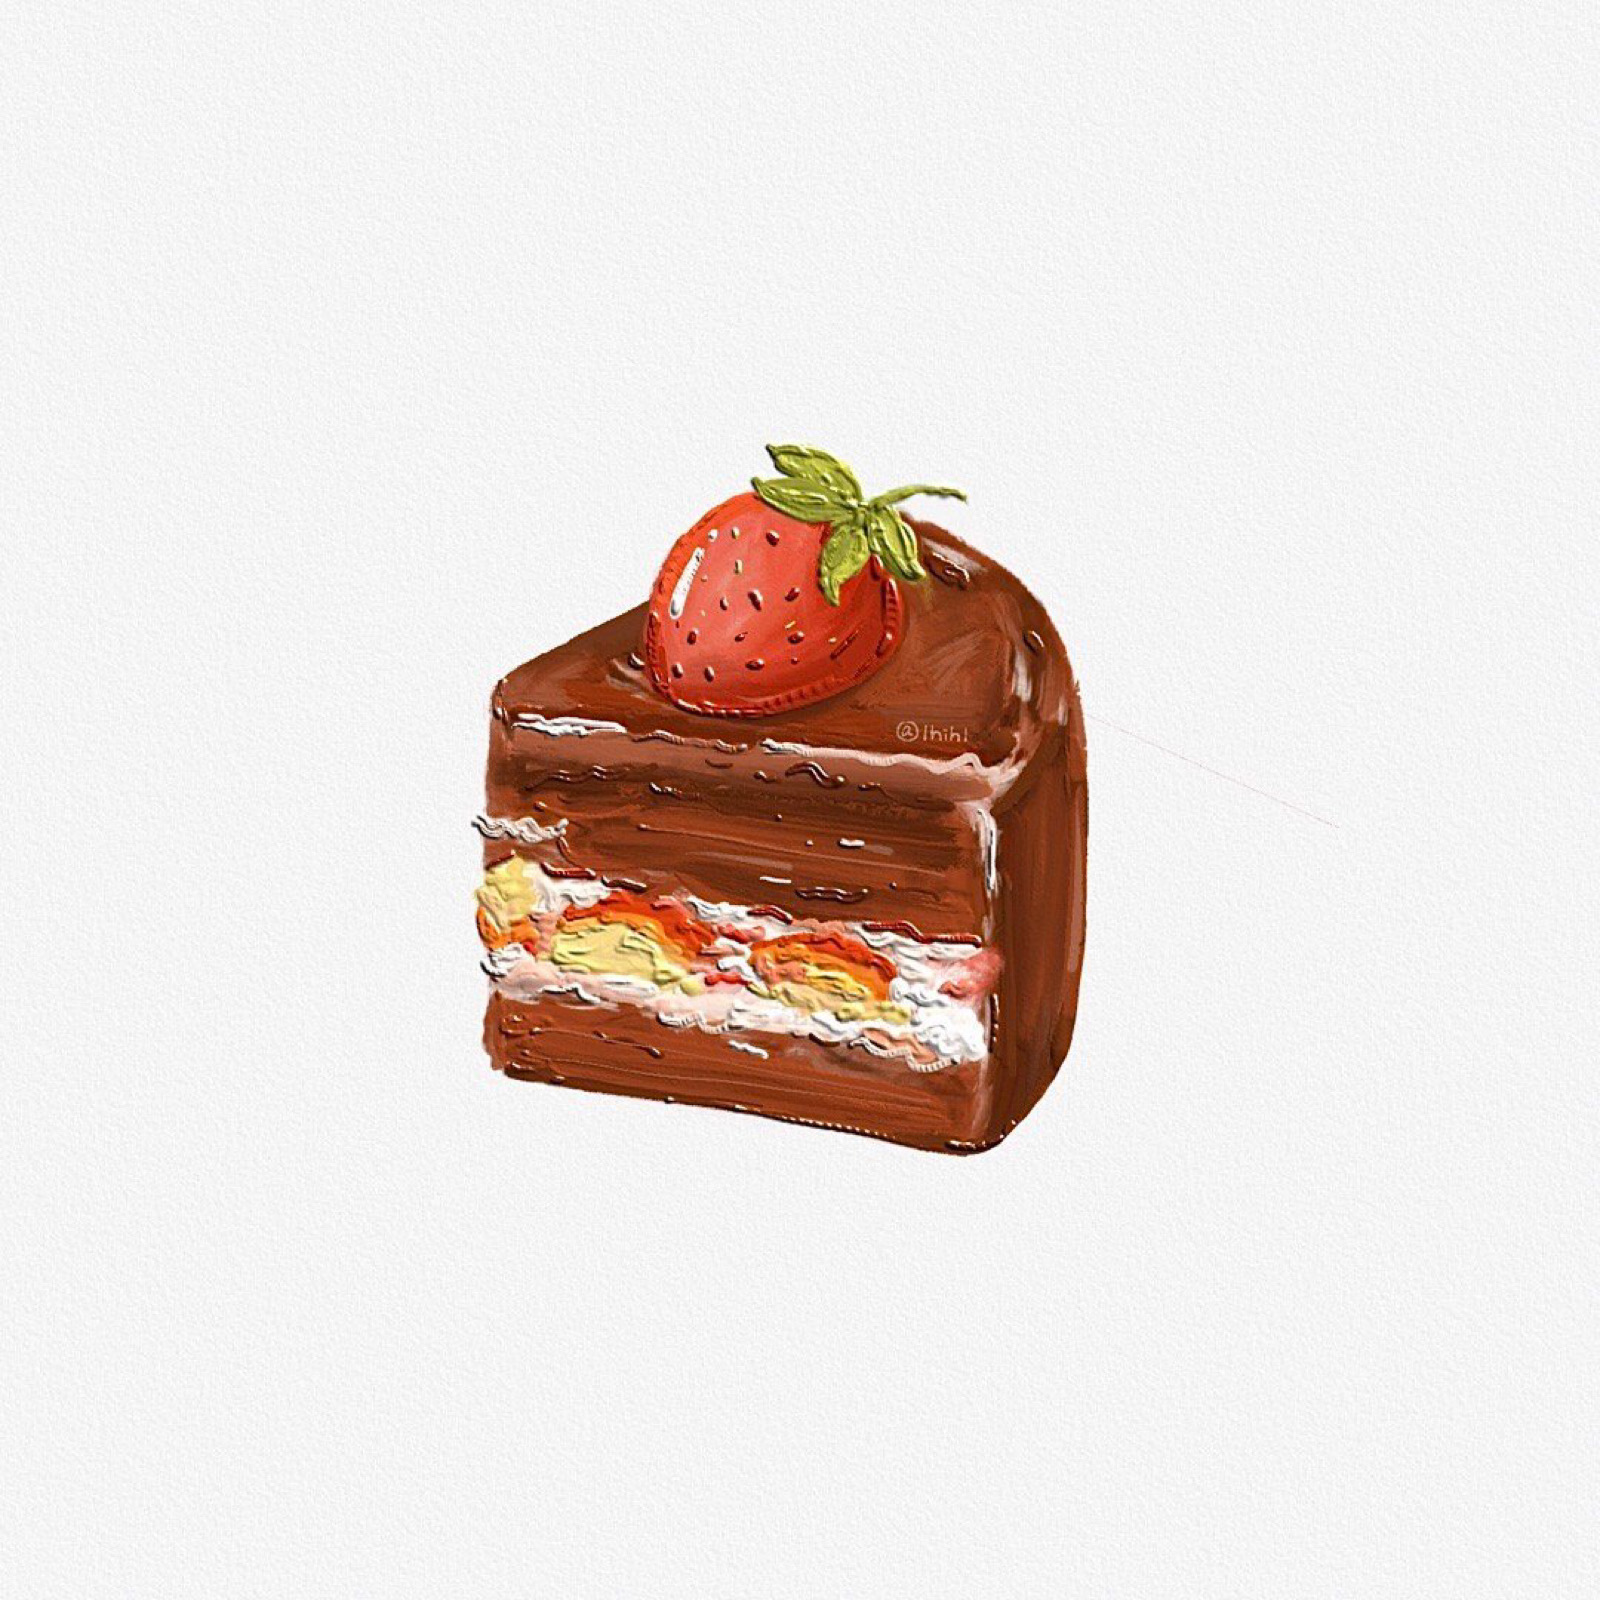 食物/蛋糕/可爱/手绘/白色背景图